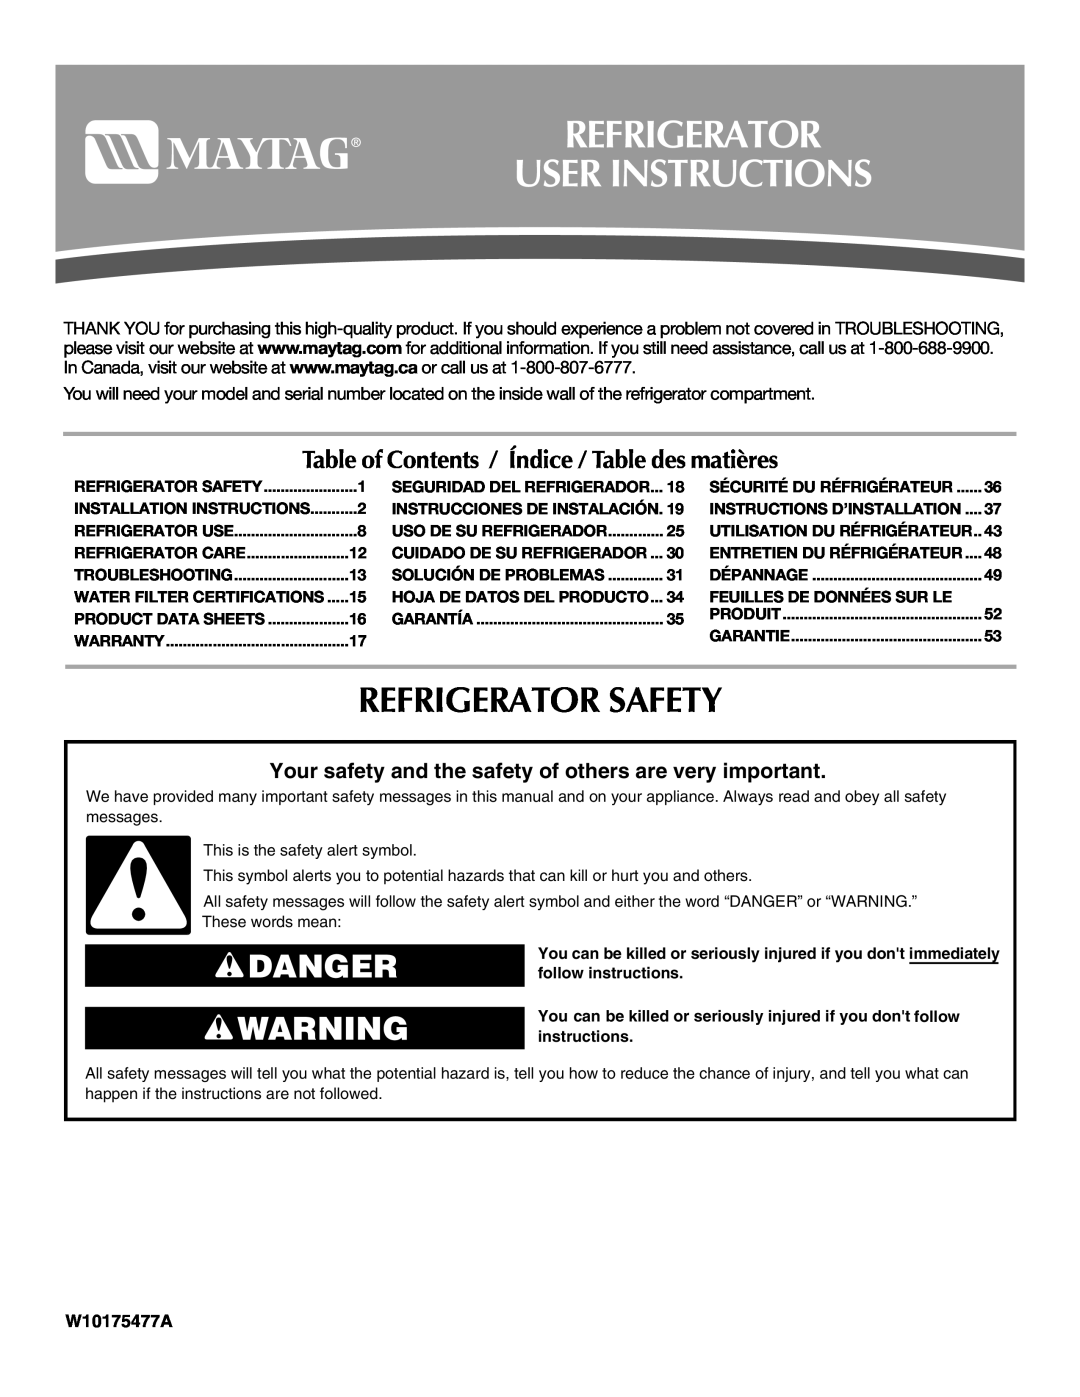 Maytag W10175477A, W10175444A installation instructions Refrigerator User Instructions, Refrigerator Safety, Danger 